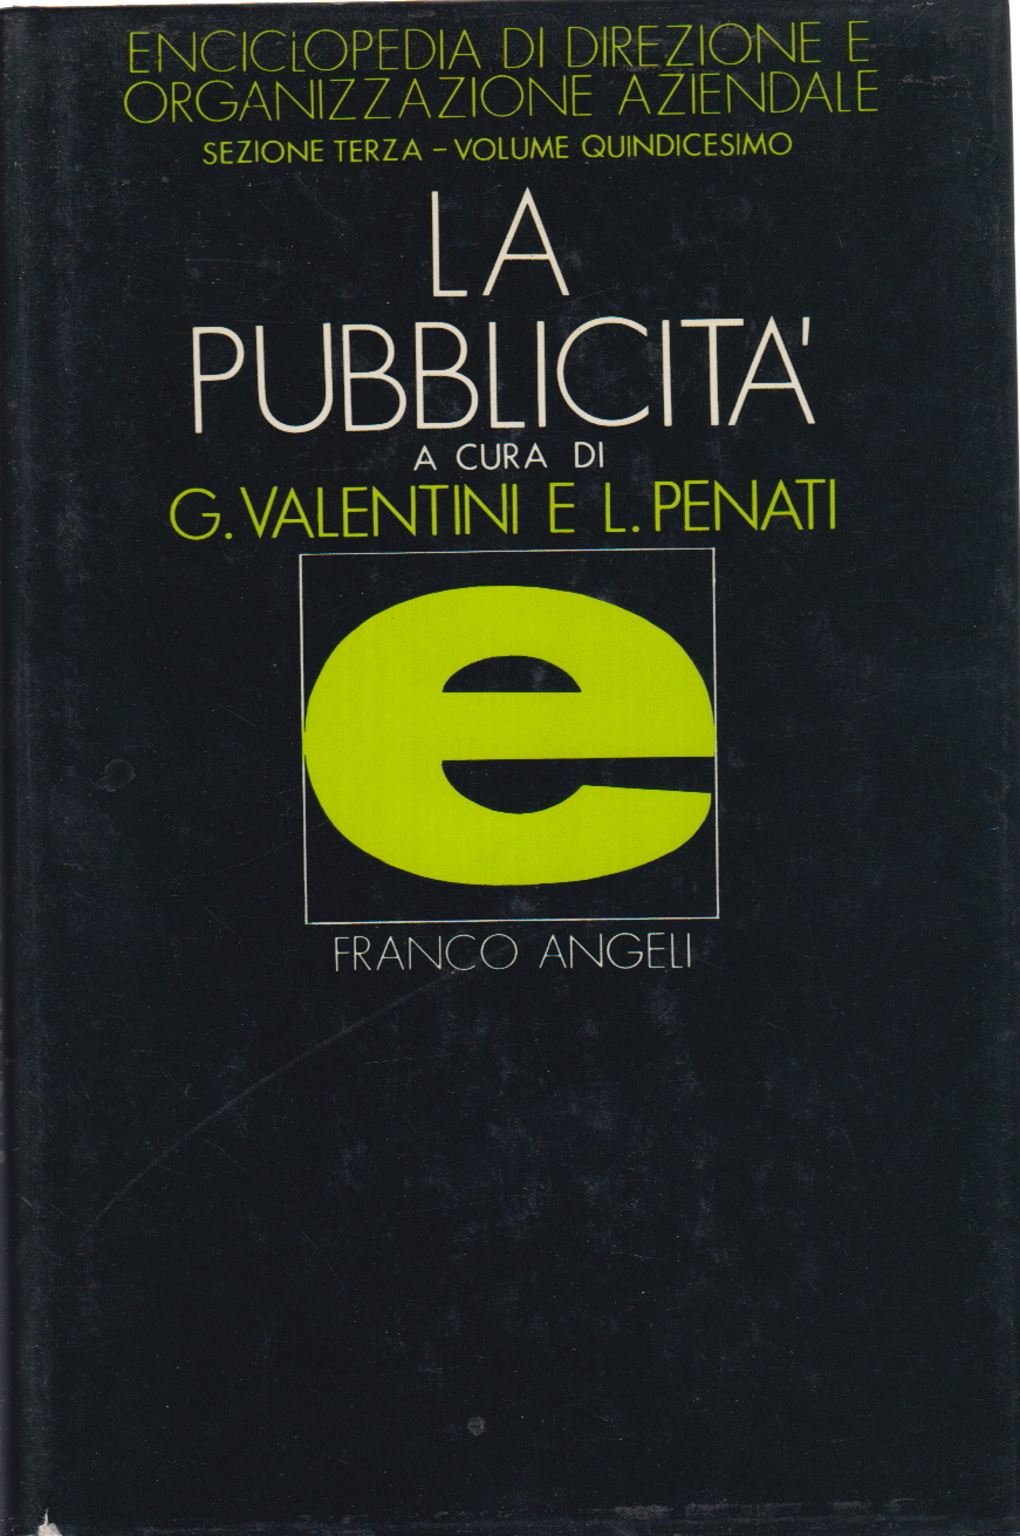 La pubblicità, Gilberto Valentini Luigi Penati